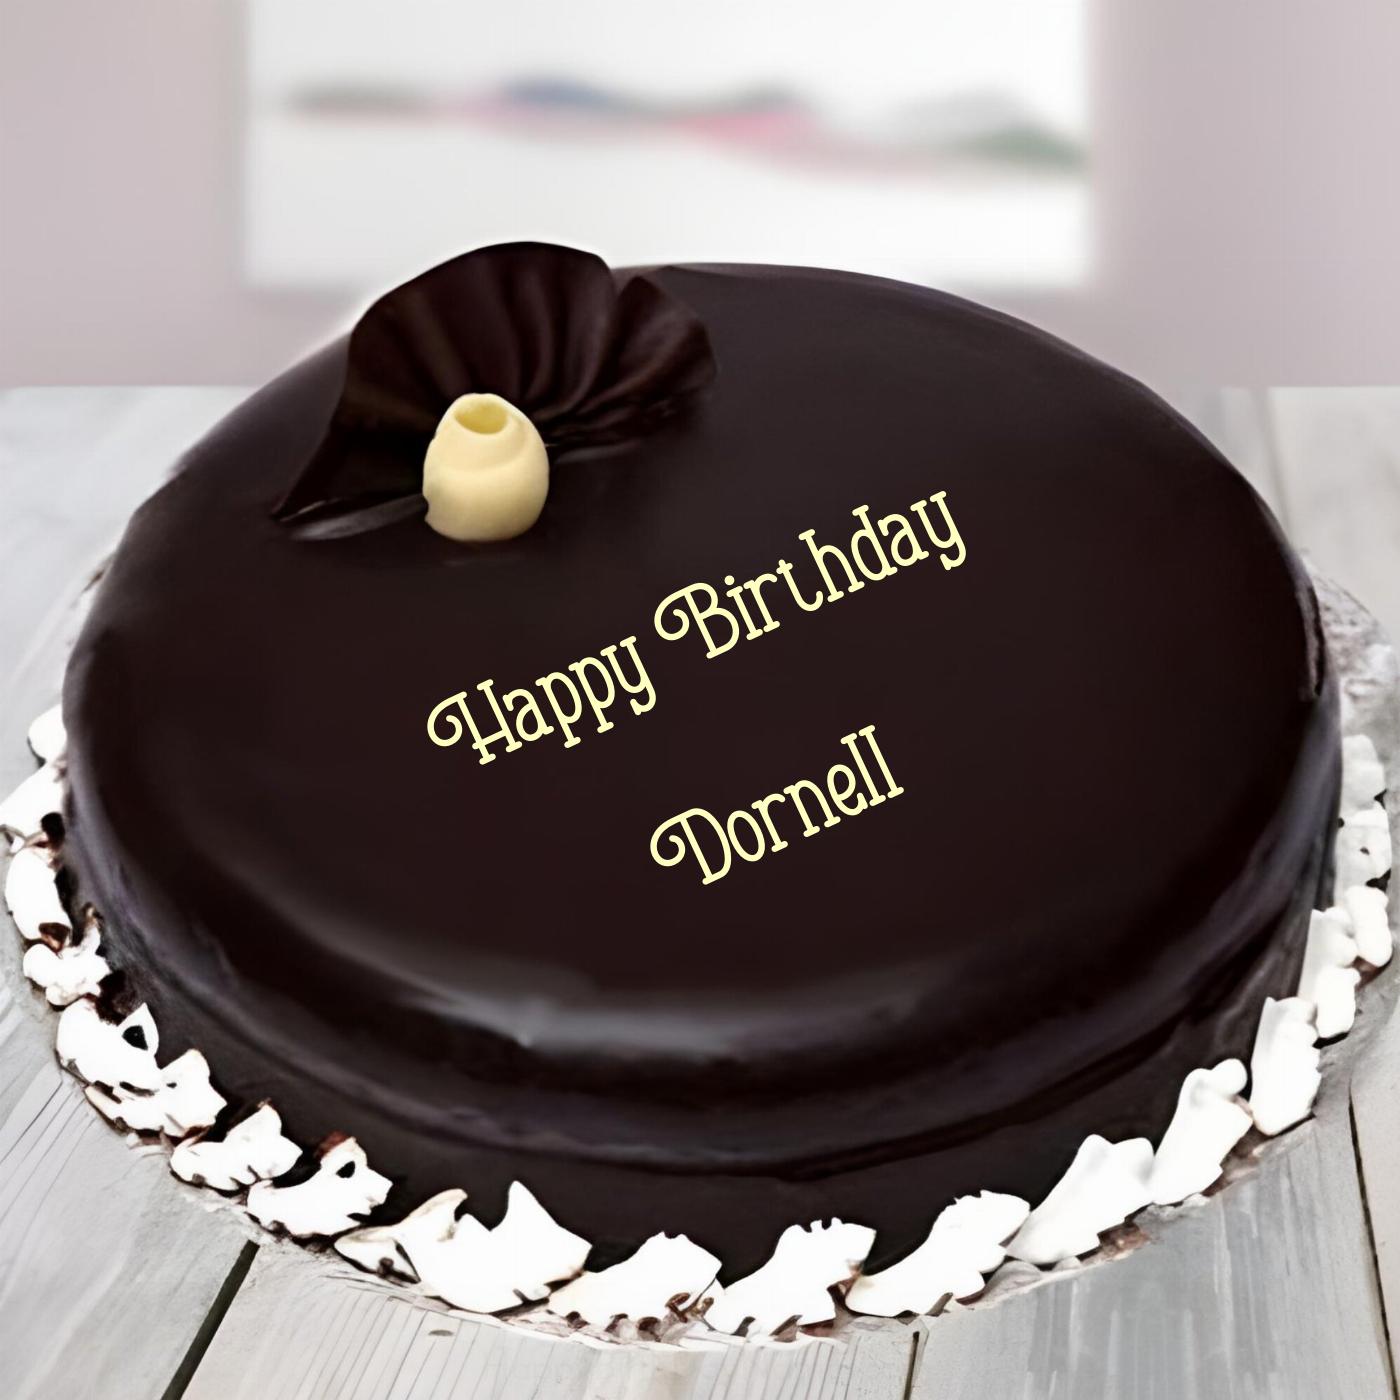 Happy Birthday Dornell Beautiful Chocolate Cake